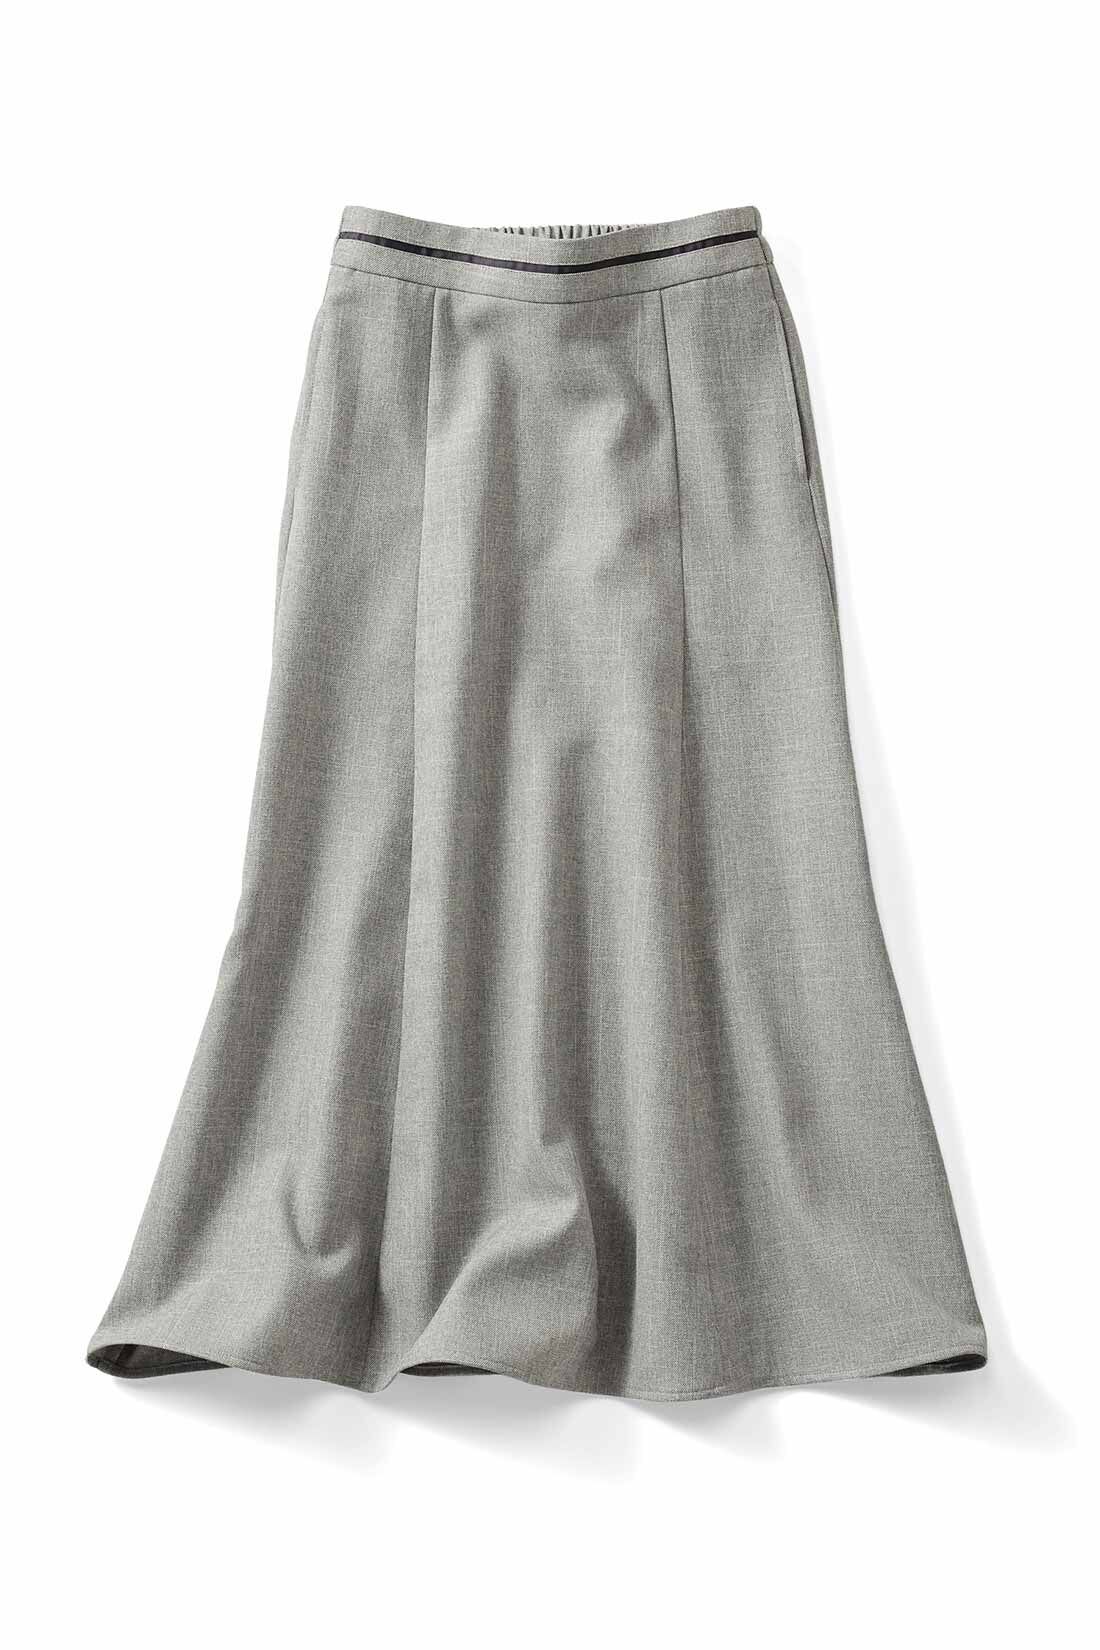 DRECO by IEDIT|【3～10日でお届け】IEDIT[イディット]　シルエットが美しい UVカット機能のすっきり見えスカート〈ライトグレー〉|〈ライトグレー〉